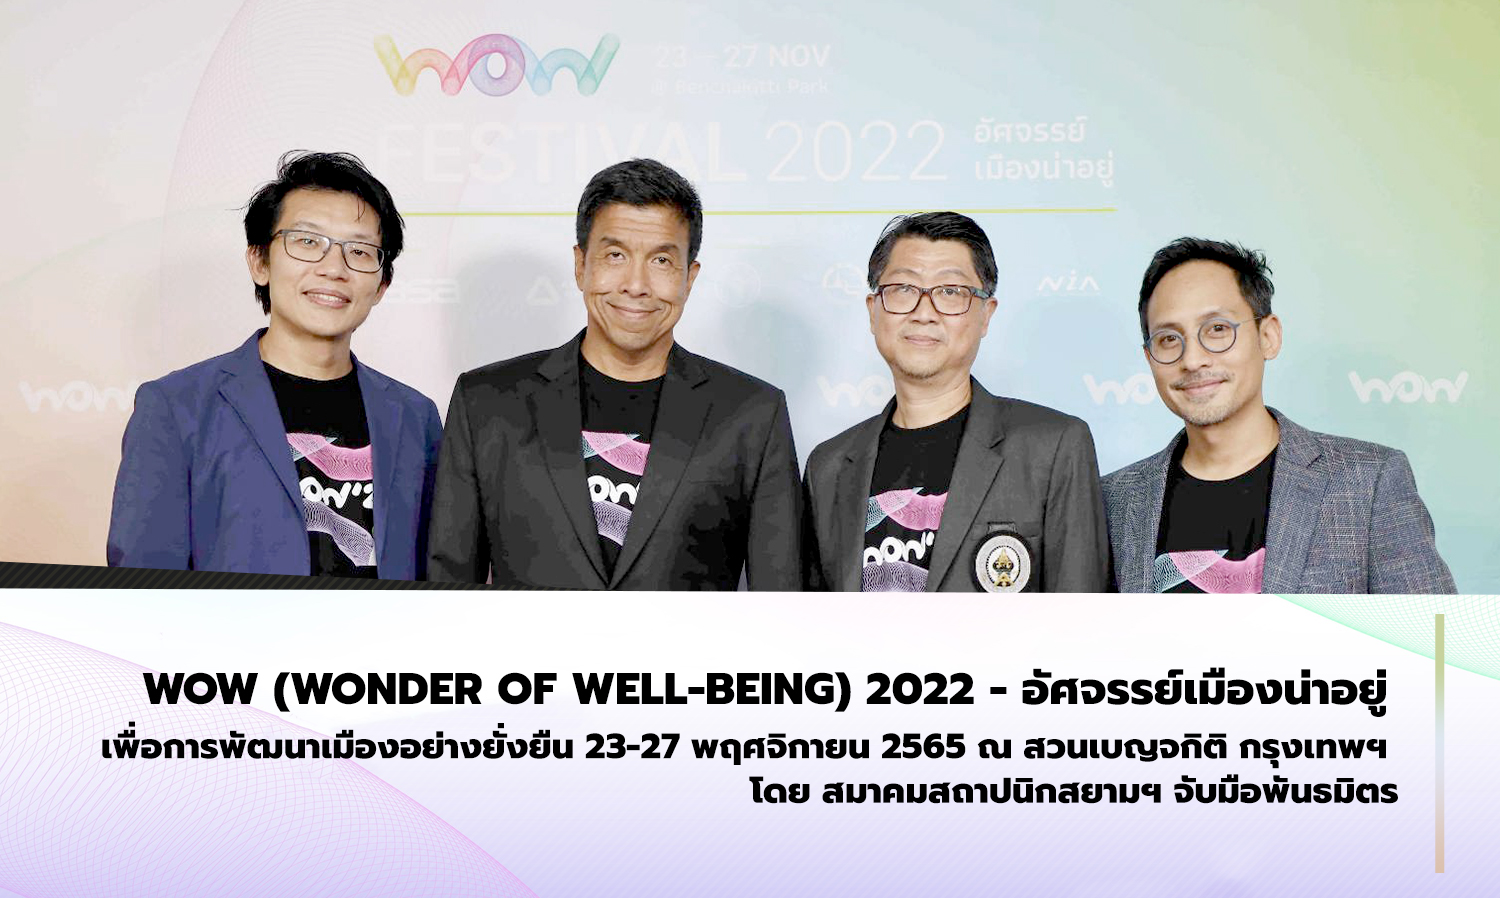 WOW (Wonder of well-being) 2022 - อัศจรรย์เมืองน่าอยู่ เพื่อการพัฒนาเมืองอย่างยั่งยืน 23-27 พฤศจิกายน 2565 ณ สวนเบญจกิติ กรุงเทพฯ โดย สมาคมสถาปนิกสยามฯ จับมือพันธมิตร